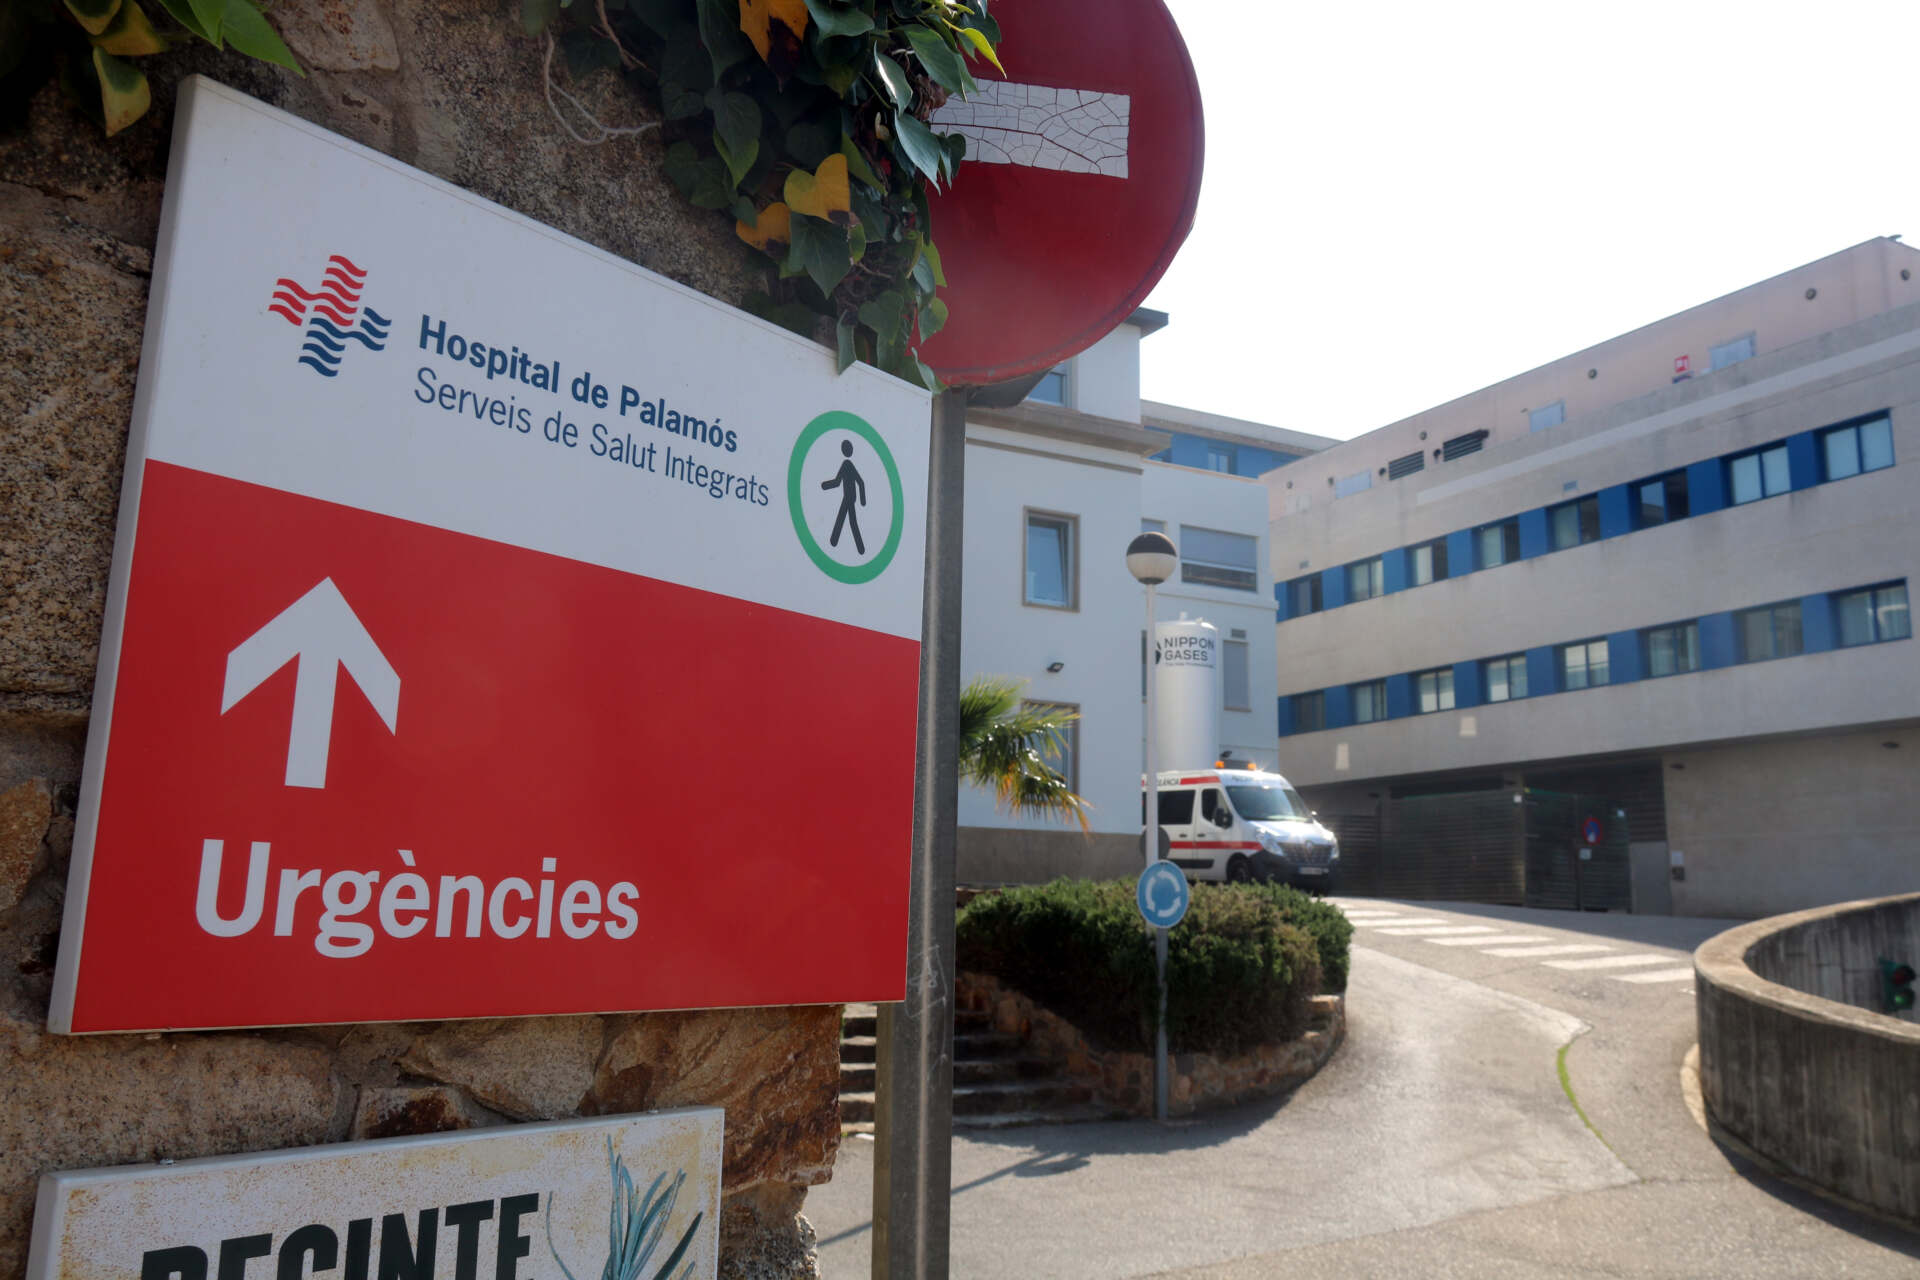 Més d’una hora d’espera: La realitat de les urgències dels hospitals catalans